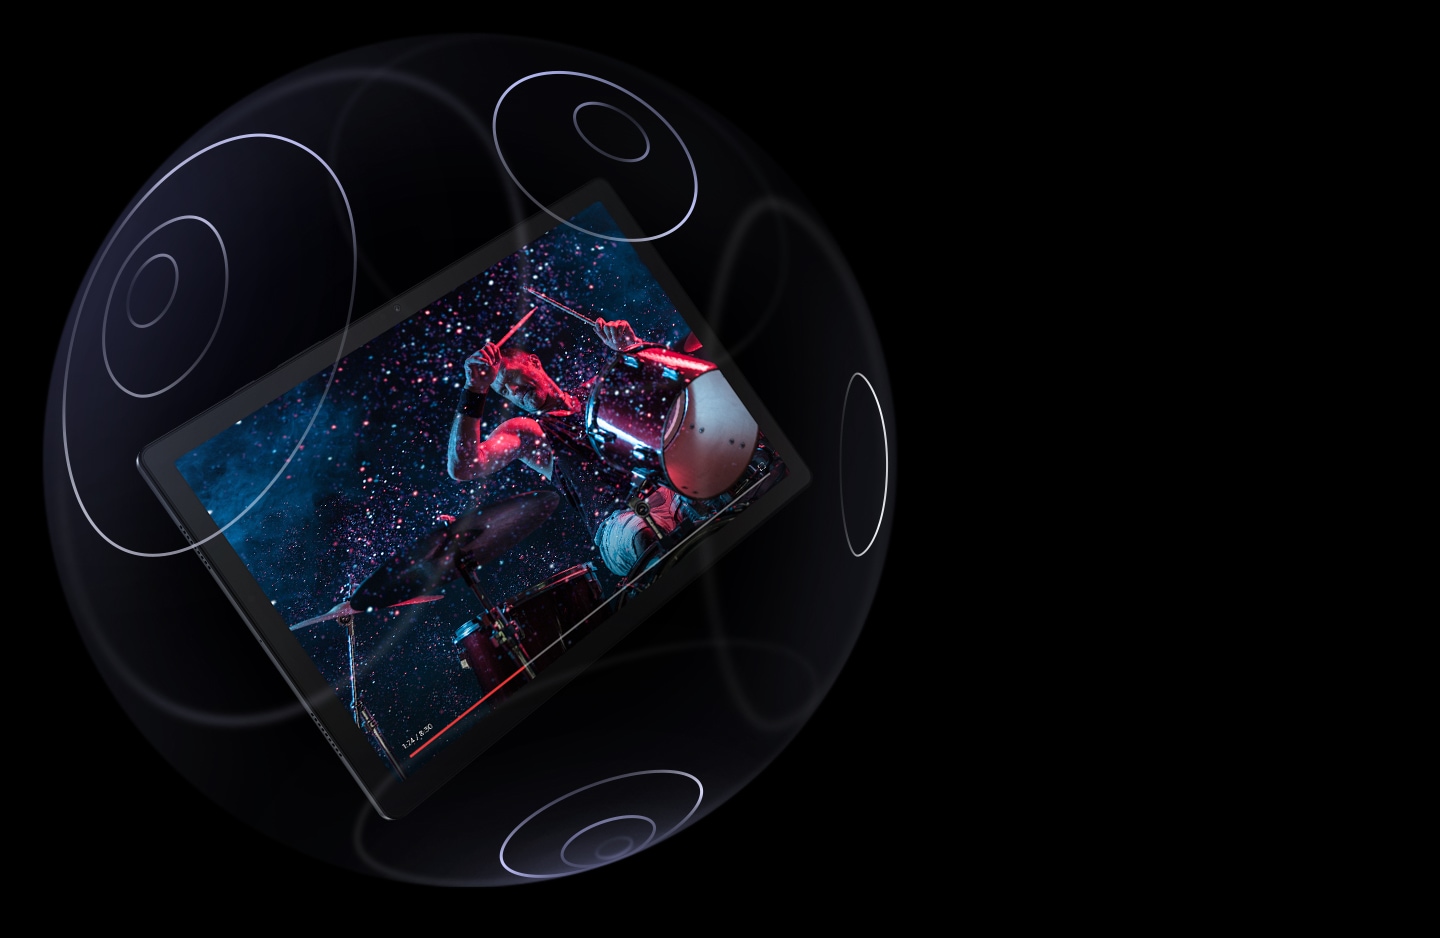 Galaxy Tab A8 prikazan kako lebdi unutar prozirne kugle koja ima označene koncentrične krugove na površini. Ekran prikazuje čovjeka koji svira bubnjeve, s trakom napretka na dnu.